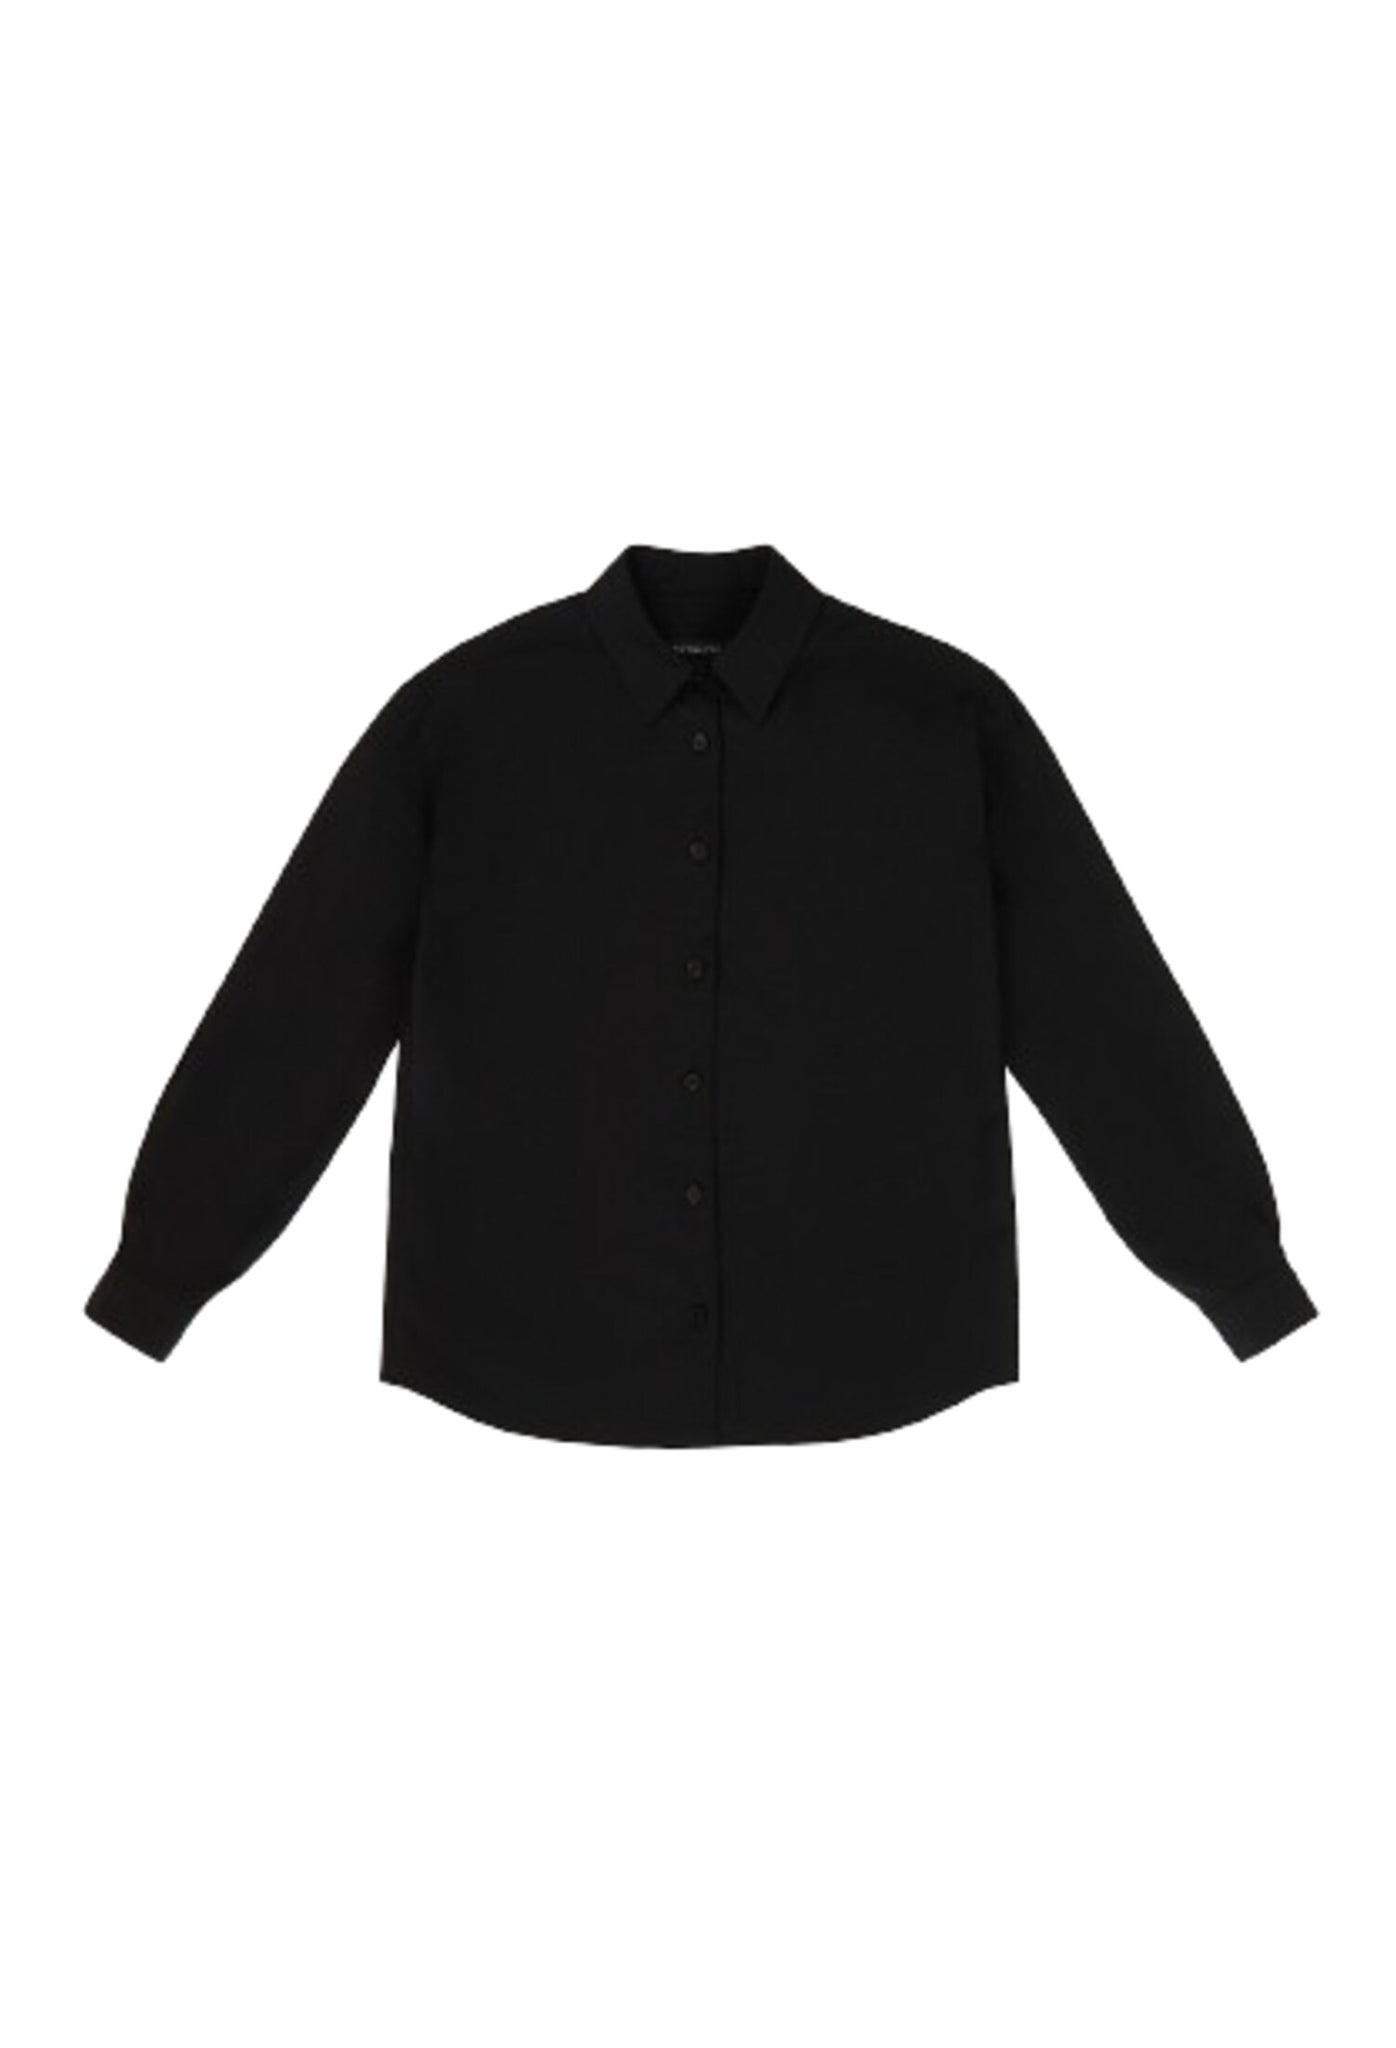 Black Woolen Shirt